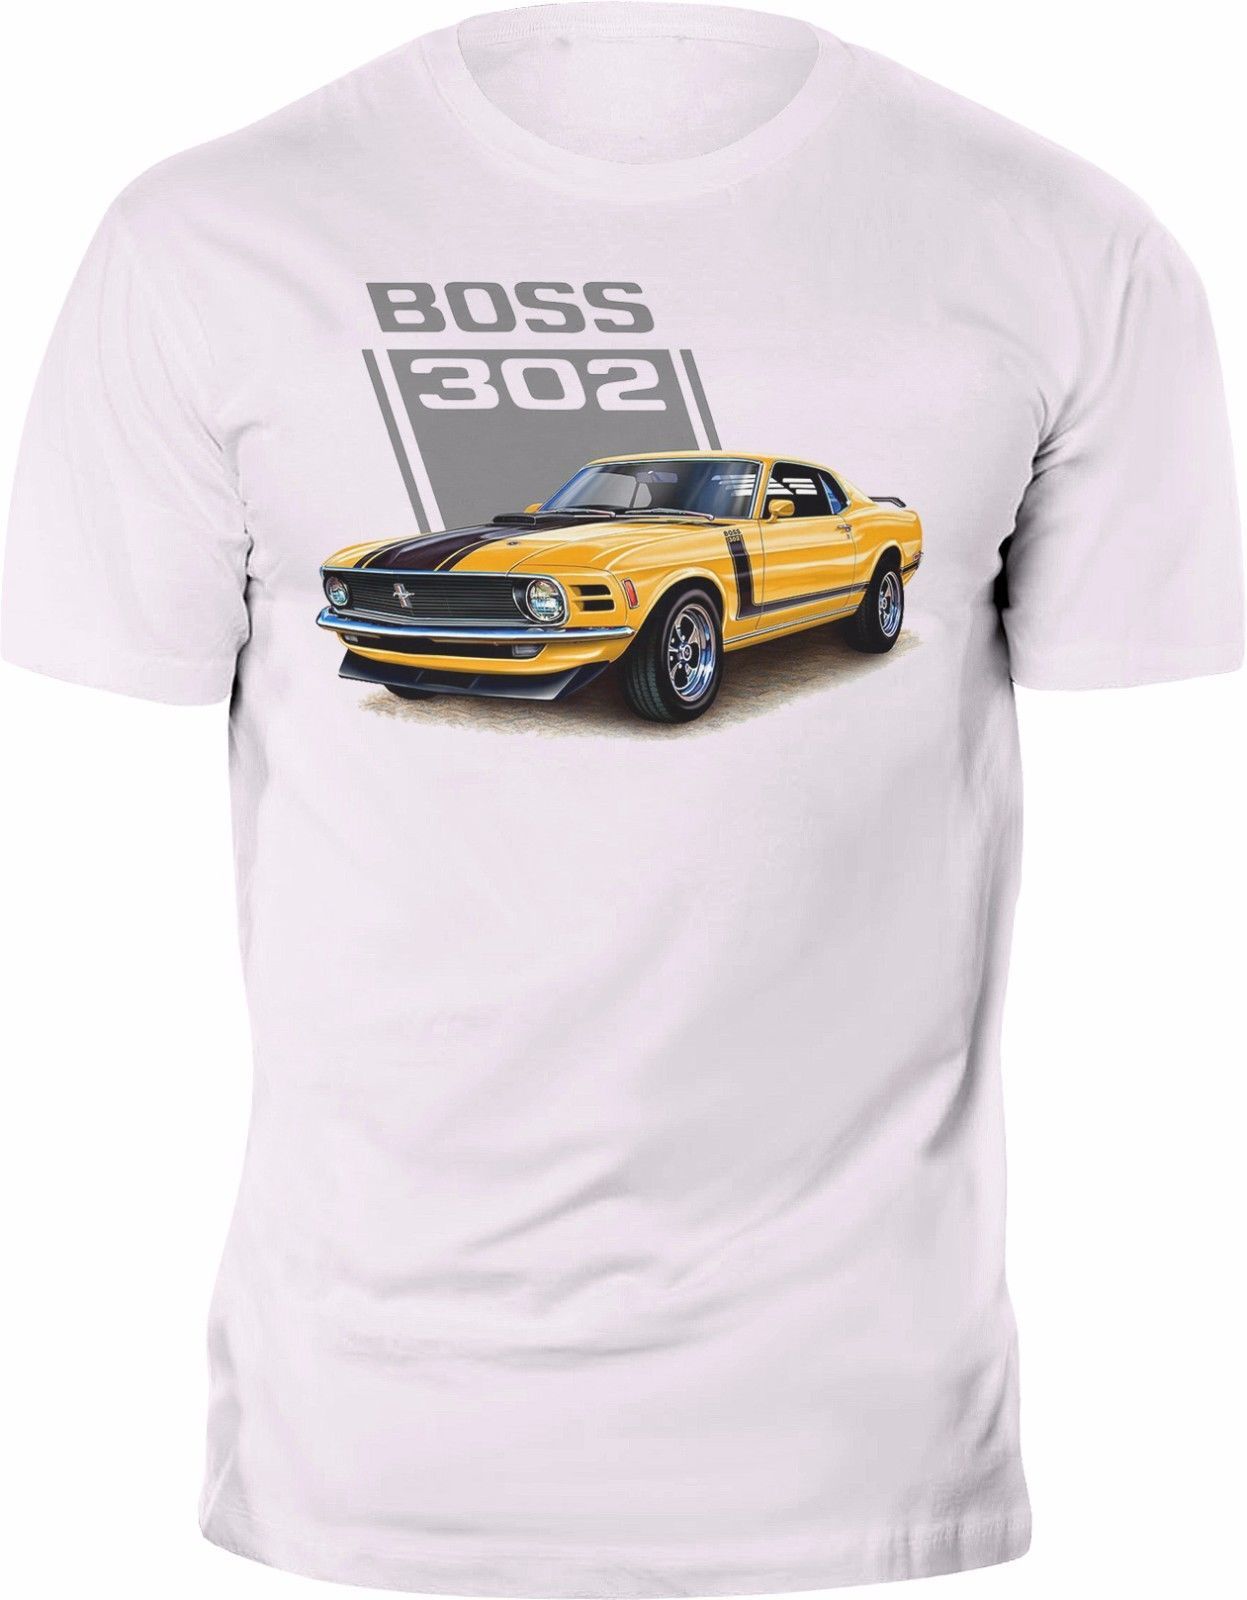 boss 302 shirt